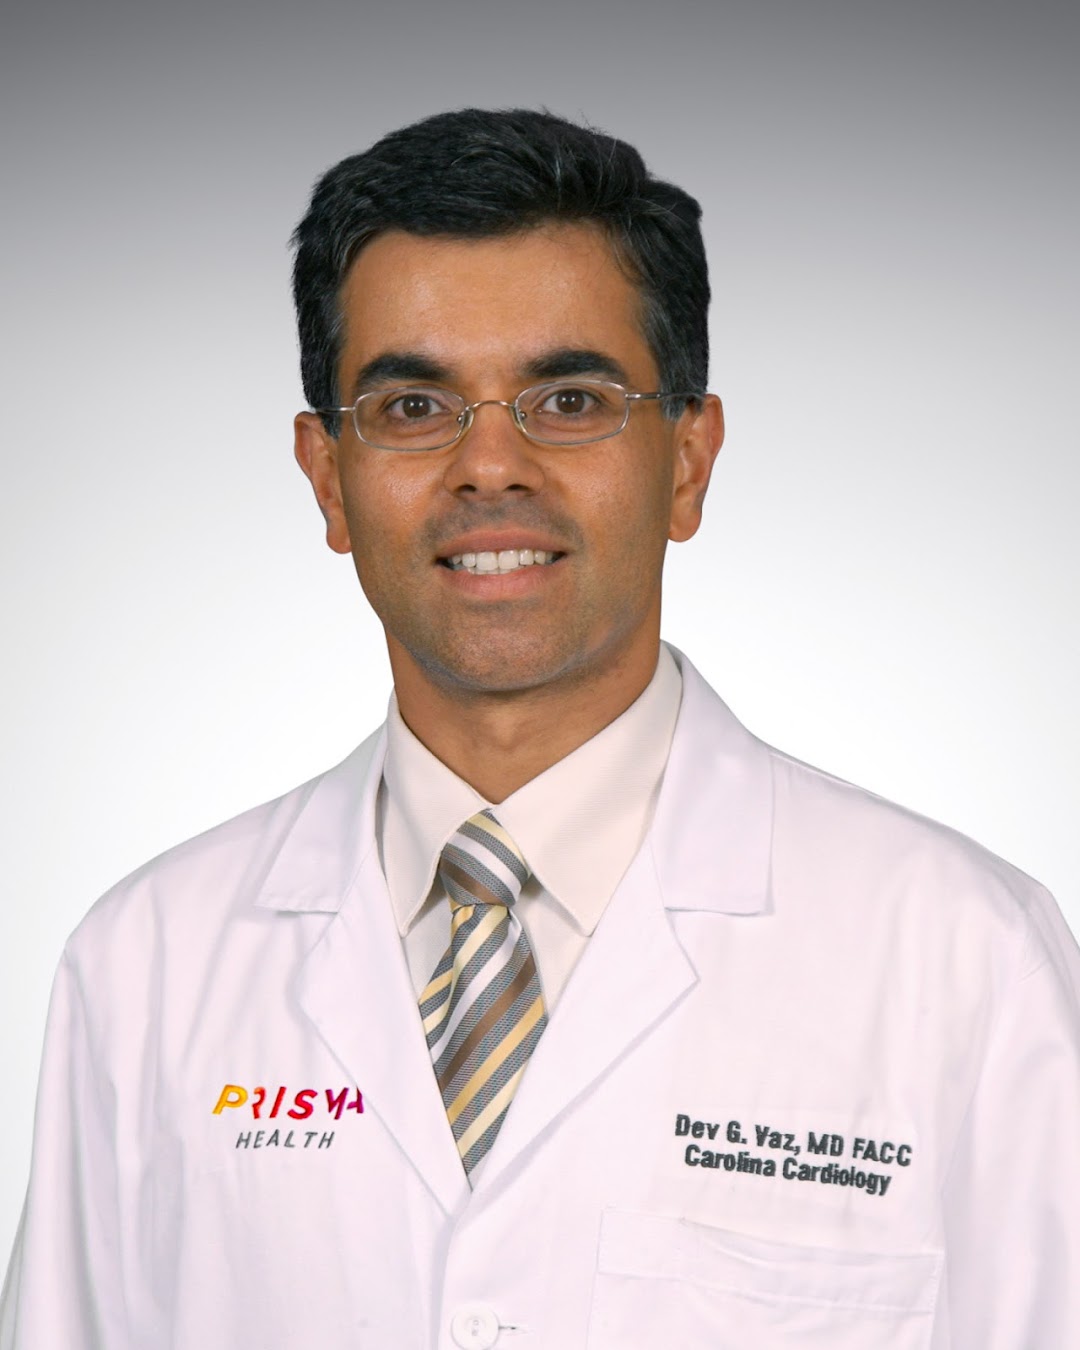 Dr. Dev Vaz, MD